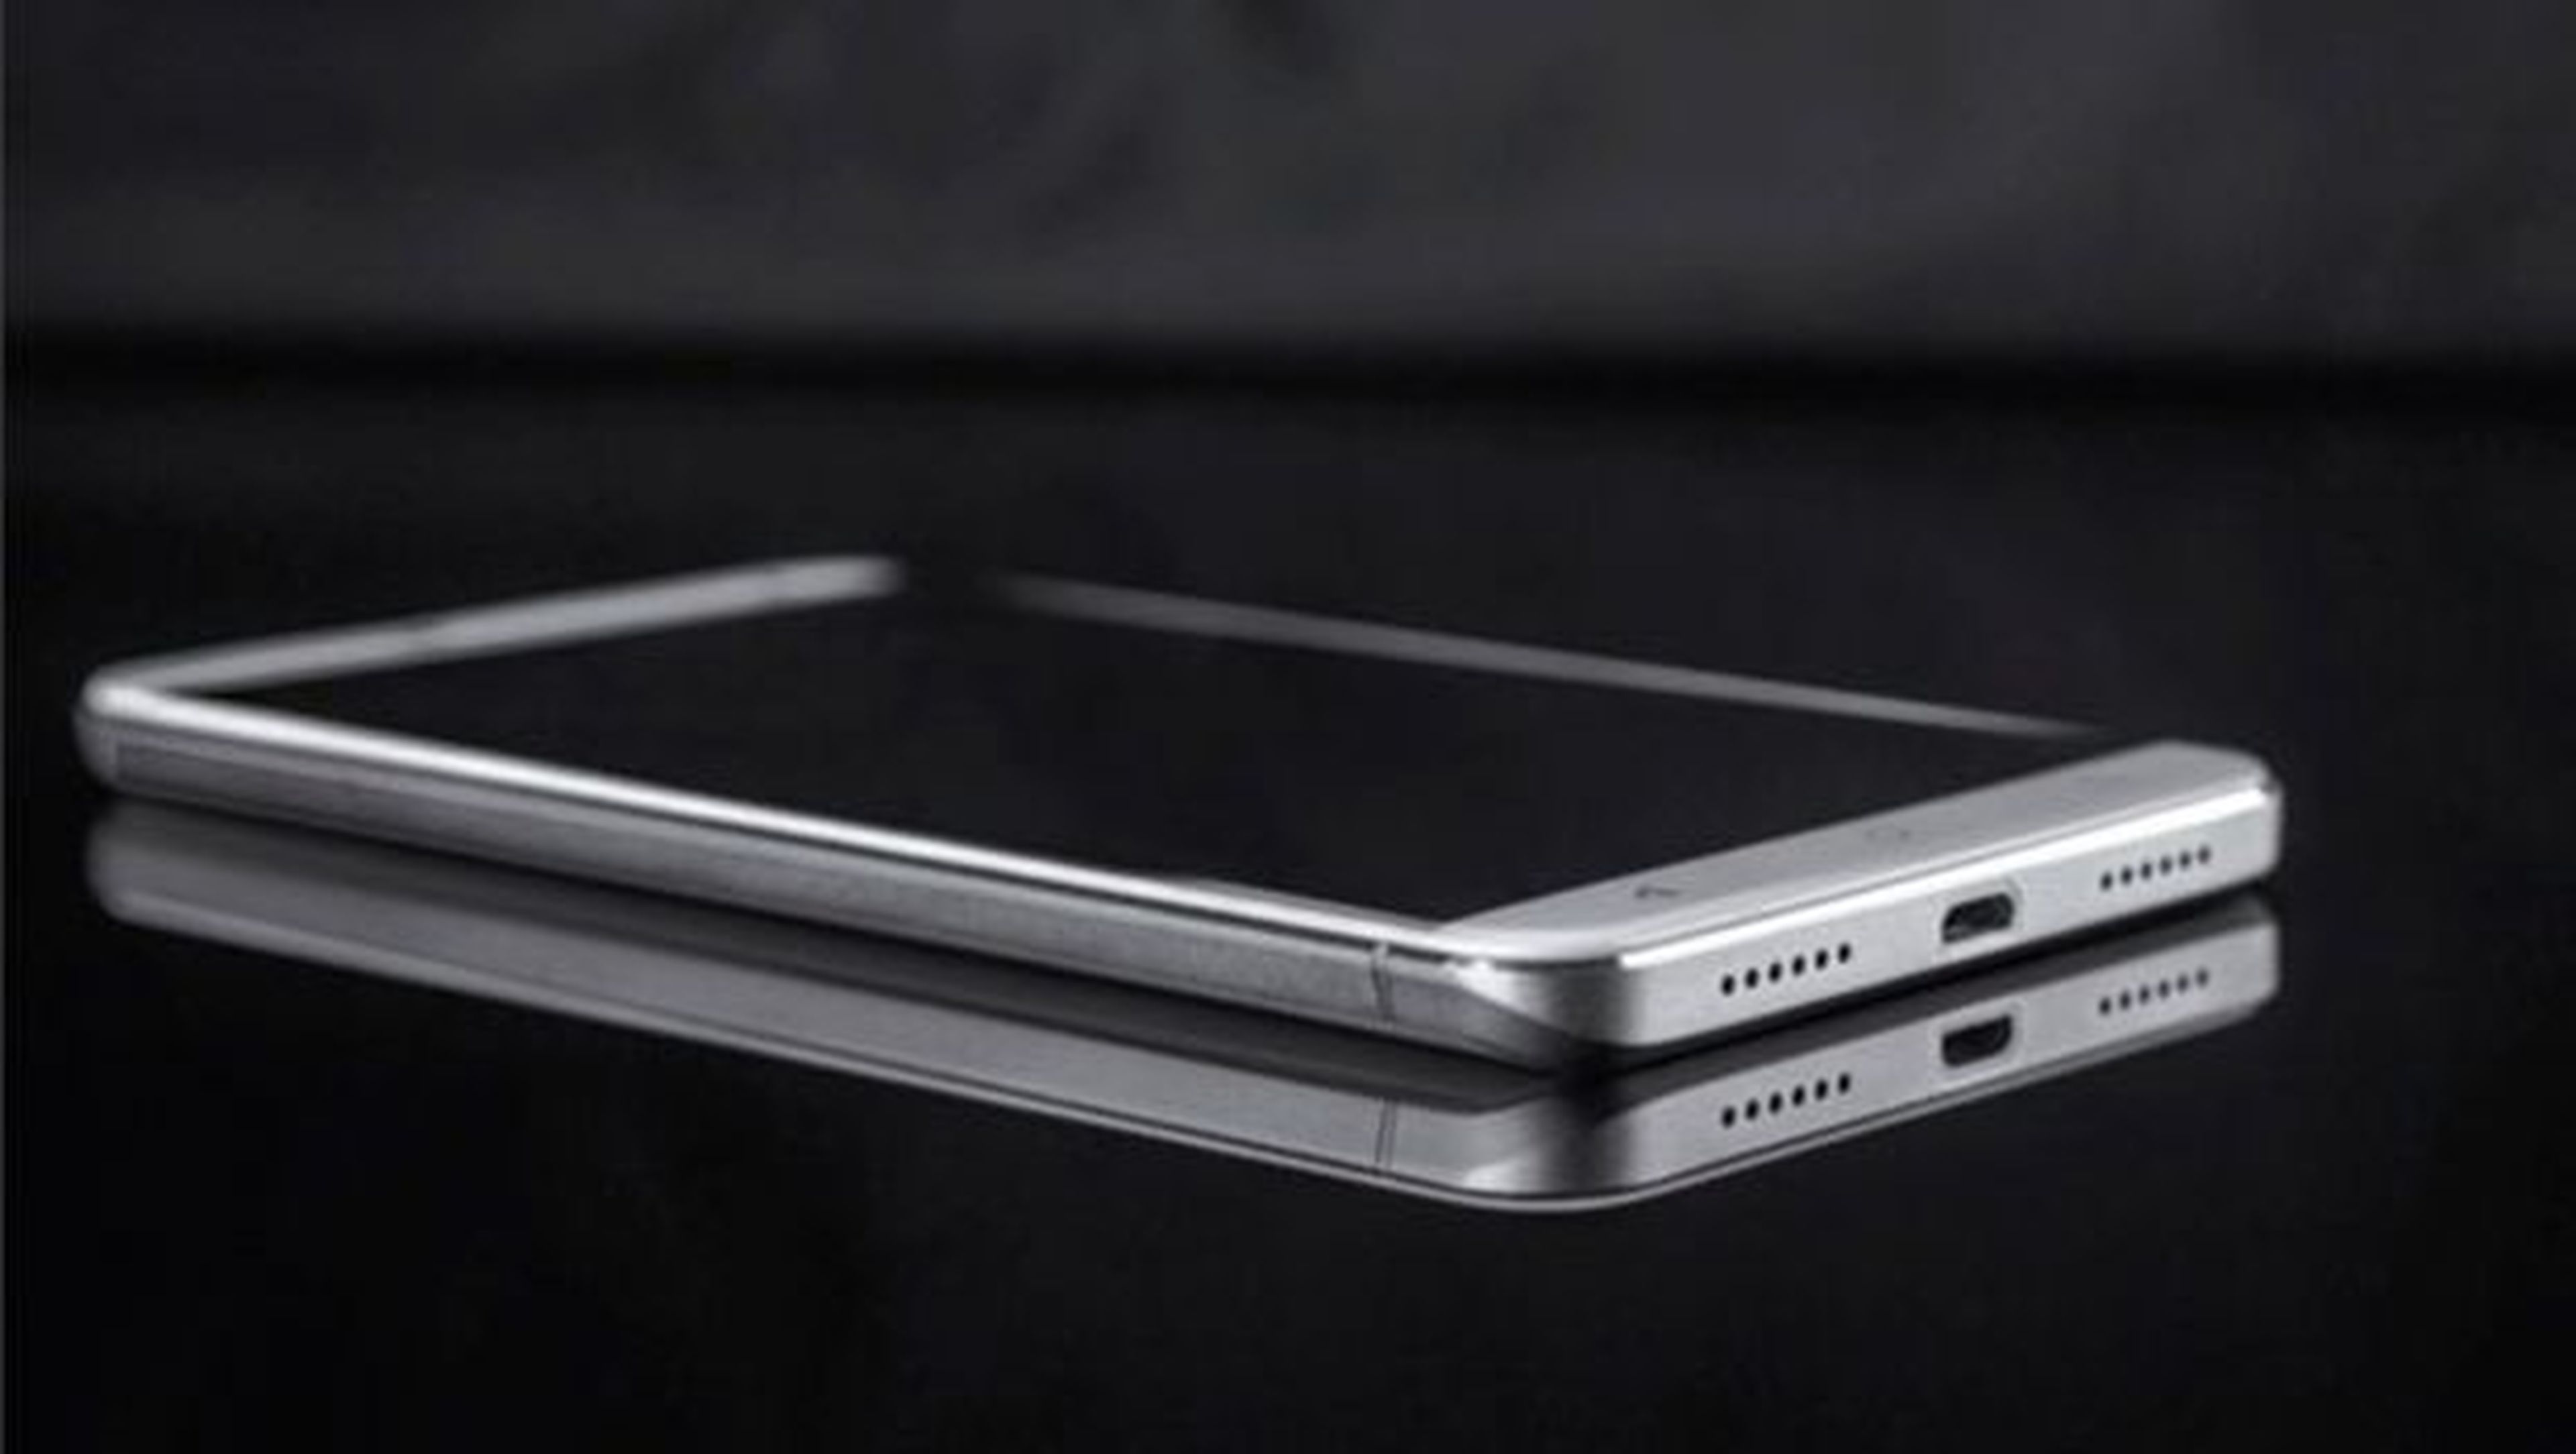 El nuevo smartphone de gama alta de Oukitel contará con una pantalla AMOLED de 5,5 pulgadas con resolución Full HD.